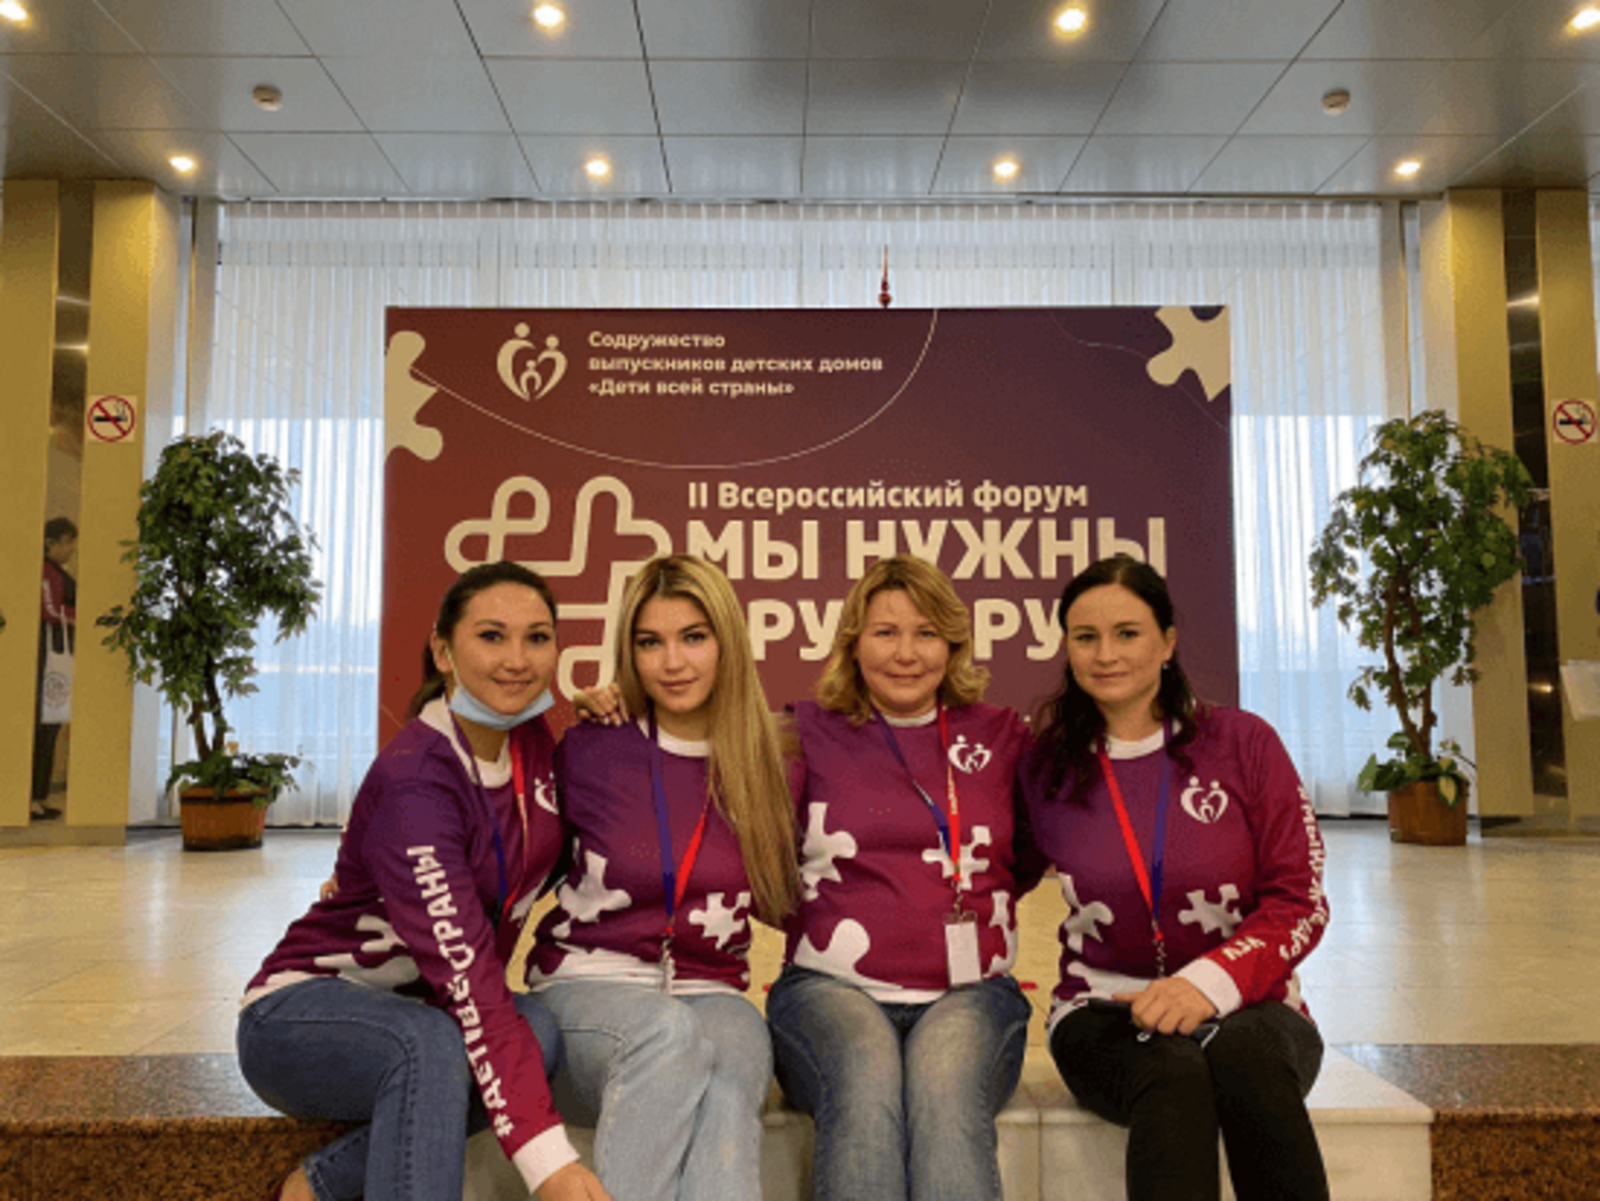 В Москве проходит II Всероссийский форум выпускников детских домов «Мы нужны друг другу»